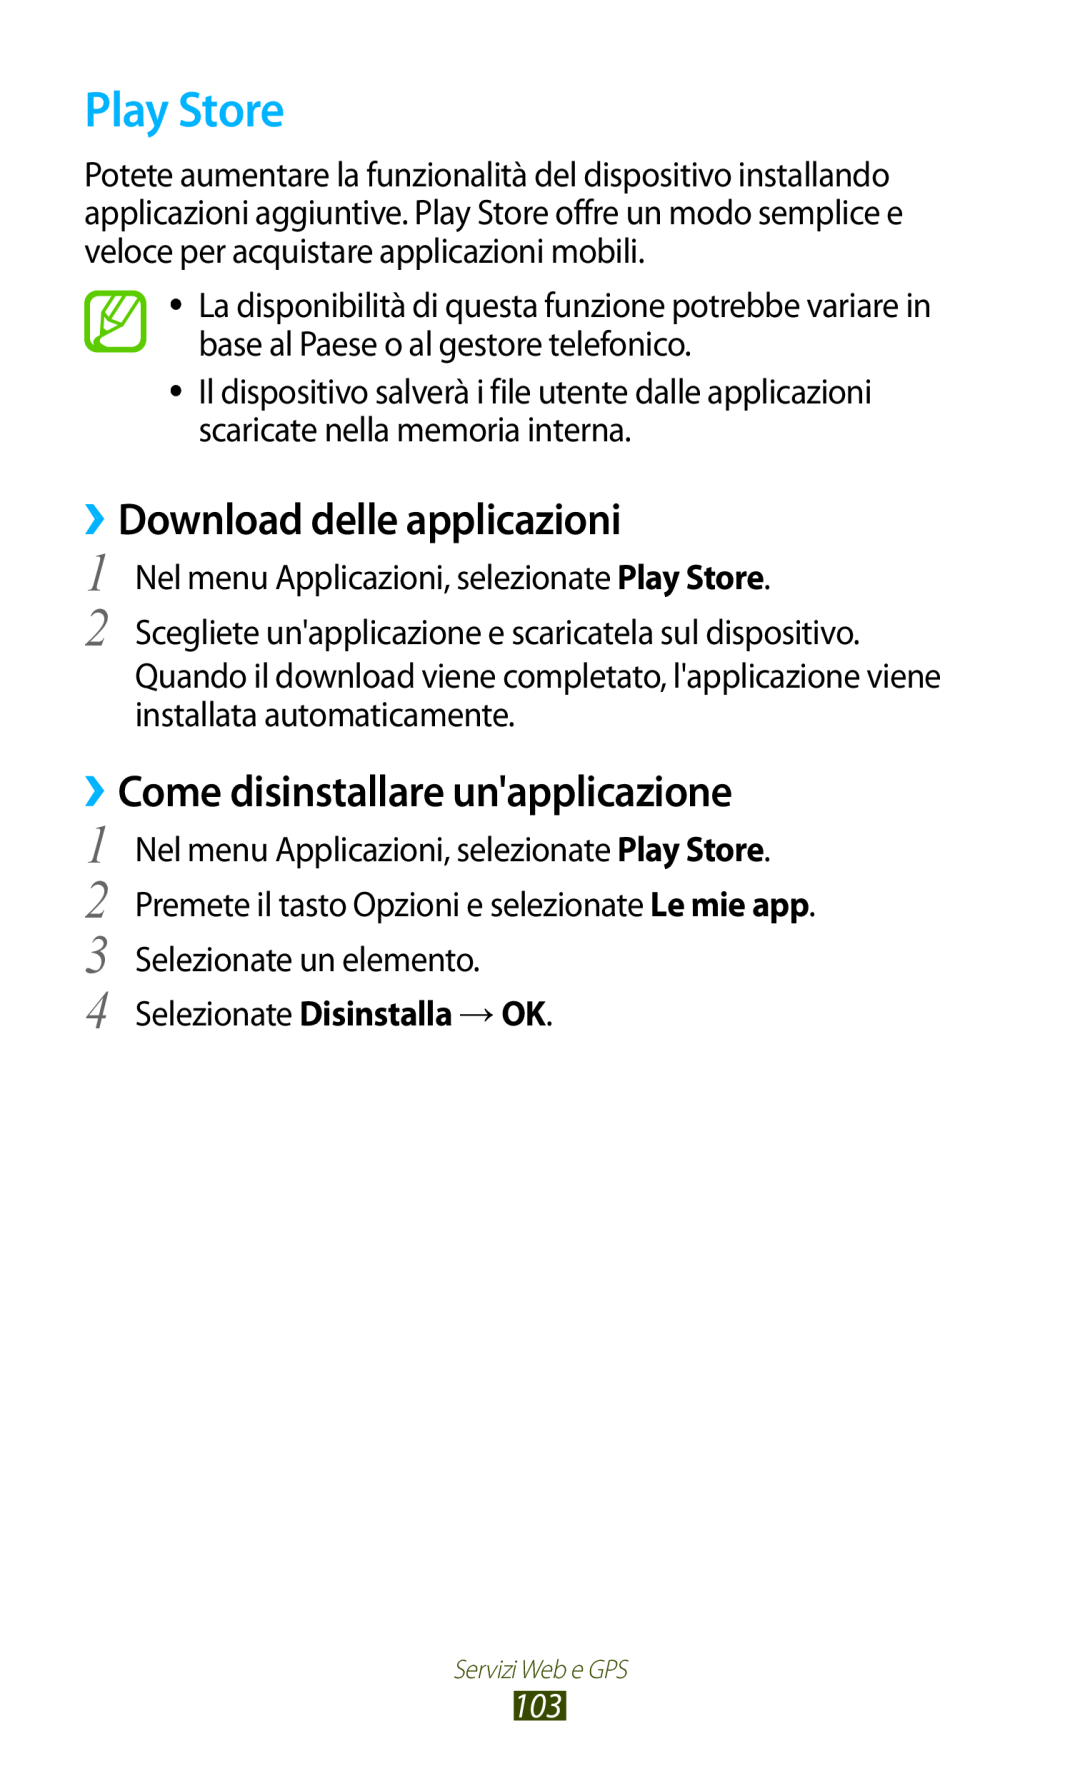 Samsung GT-S7560ZKAITV, GT-S7560UWAWIN manual Play Store, ››Download delle applicazioni, ››Come disinstallare unapplicazione 